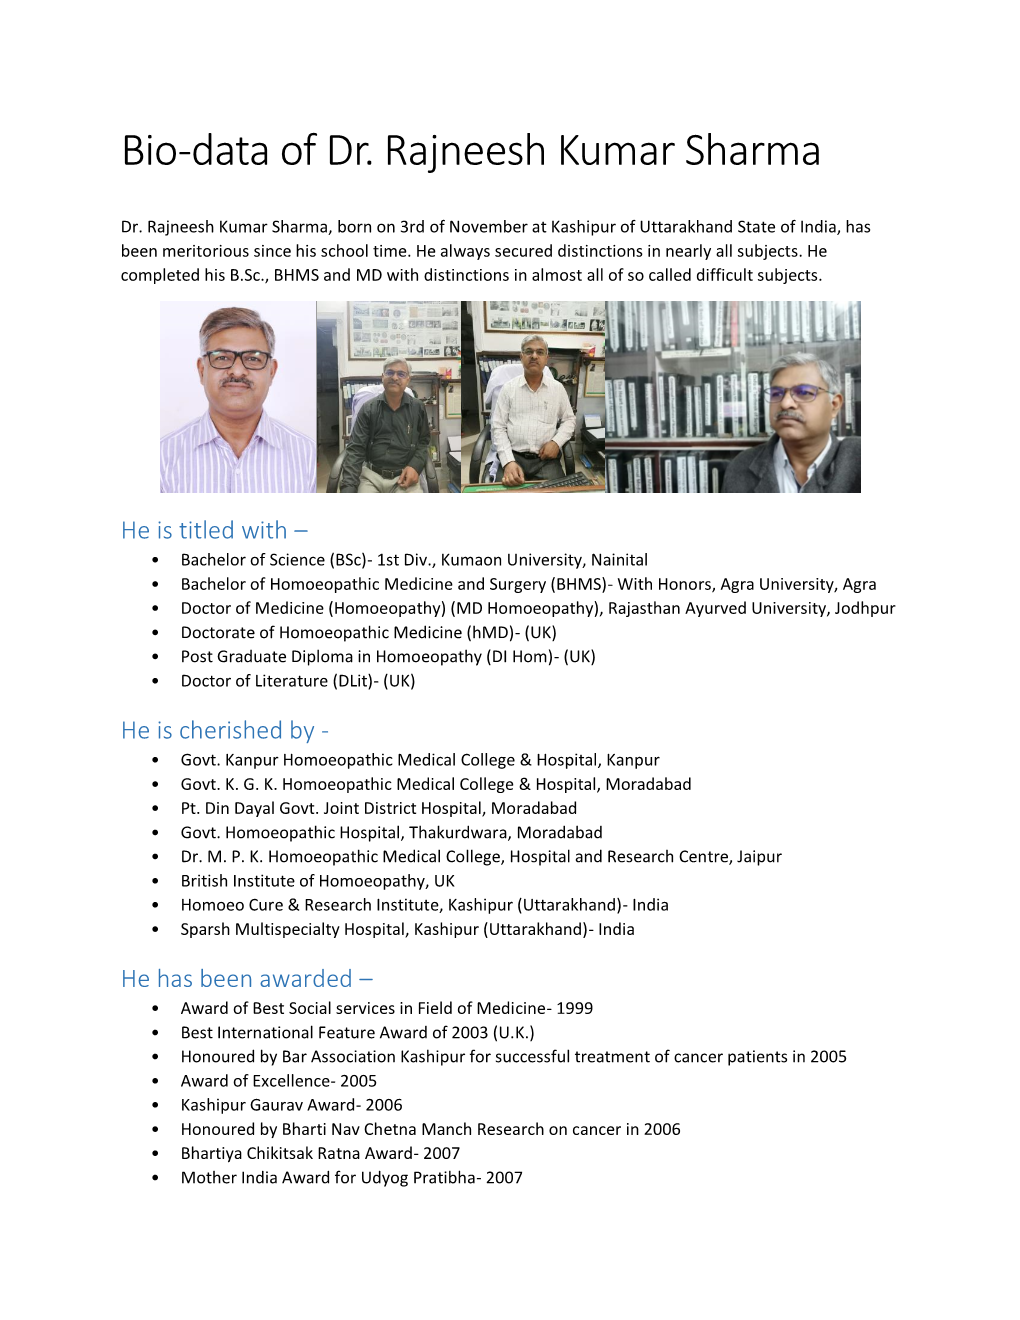 Bio-Data of Dr. Rajneesh Kumar Sharma